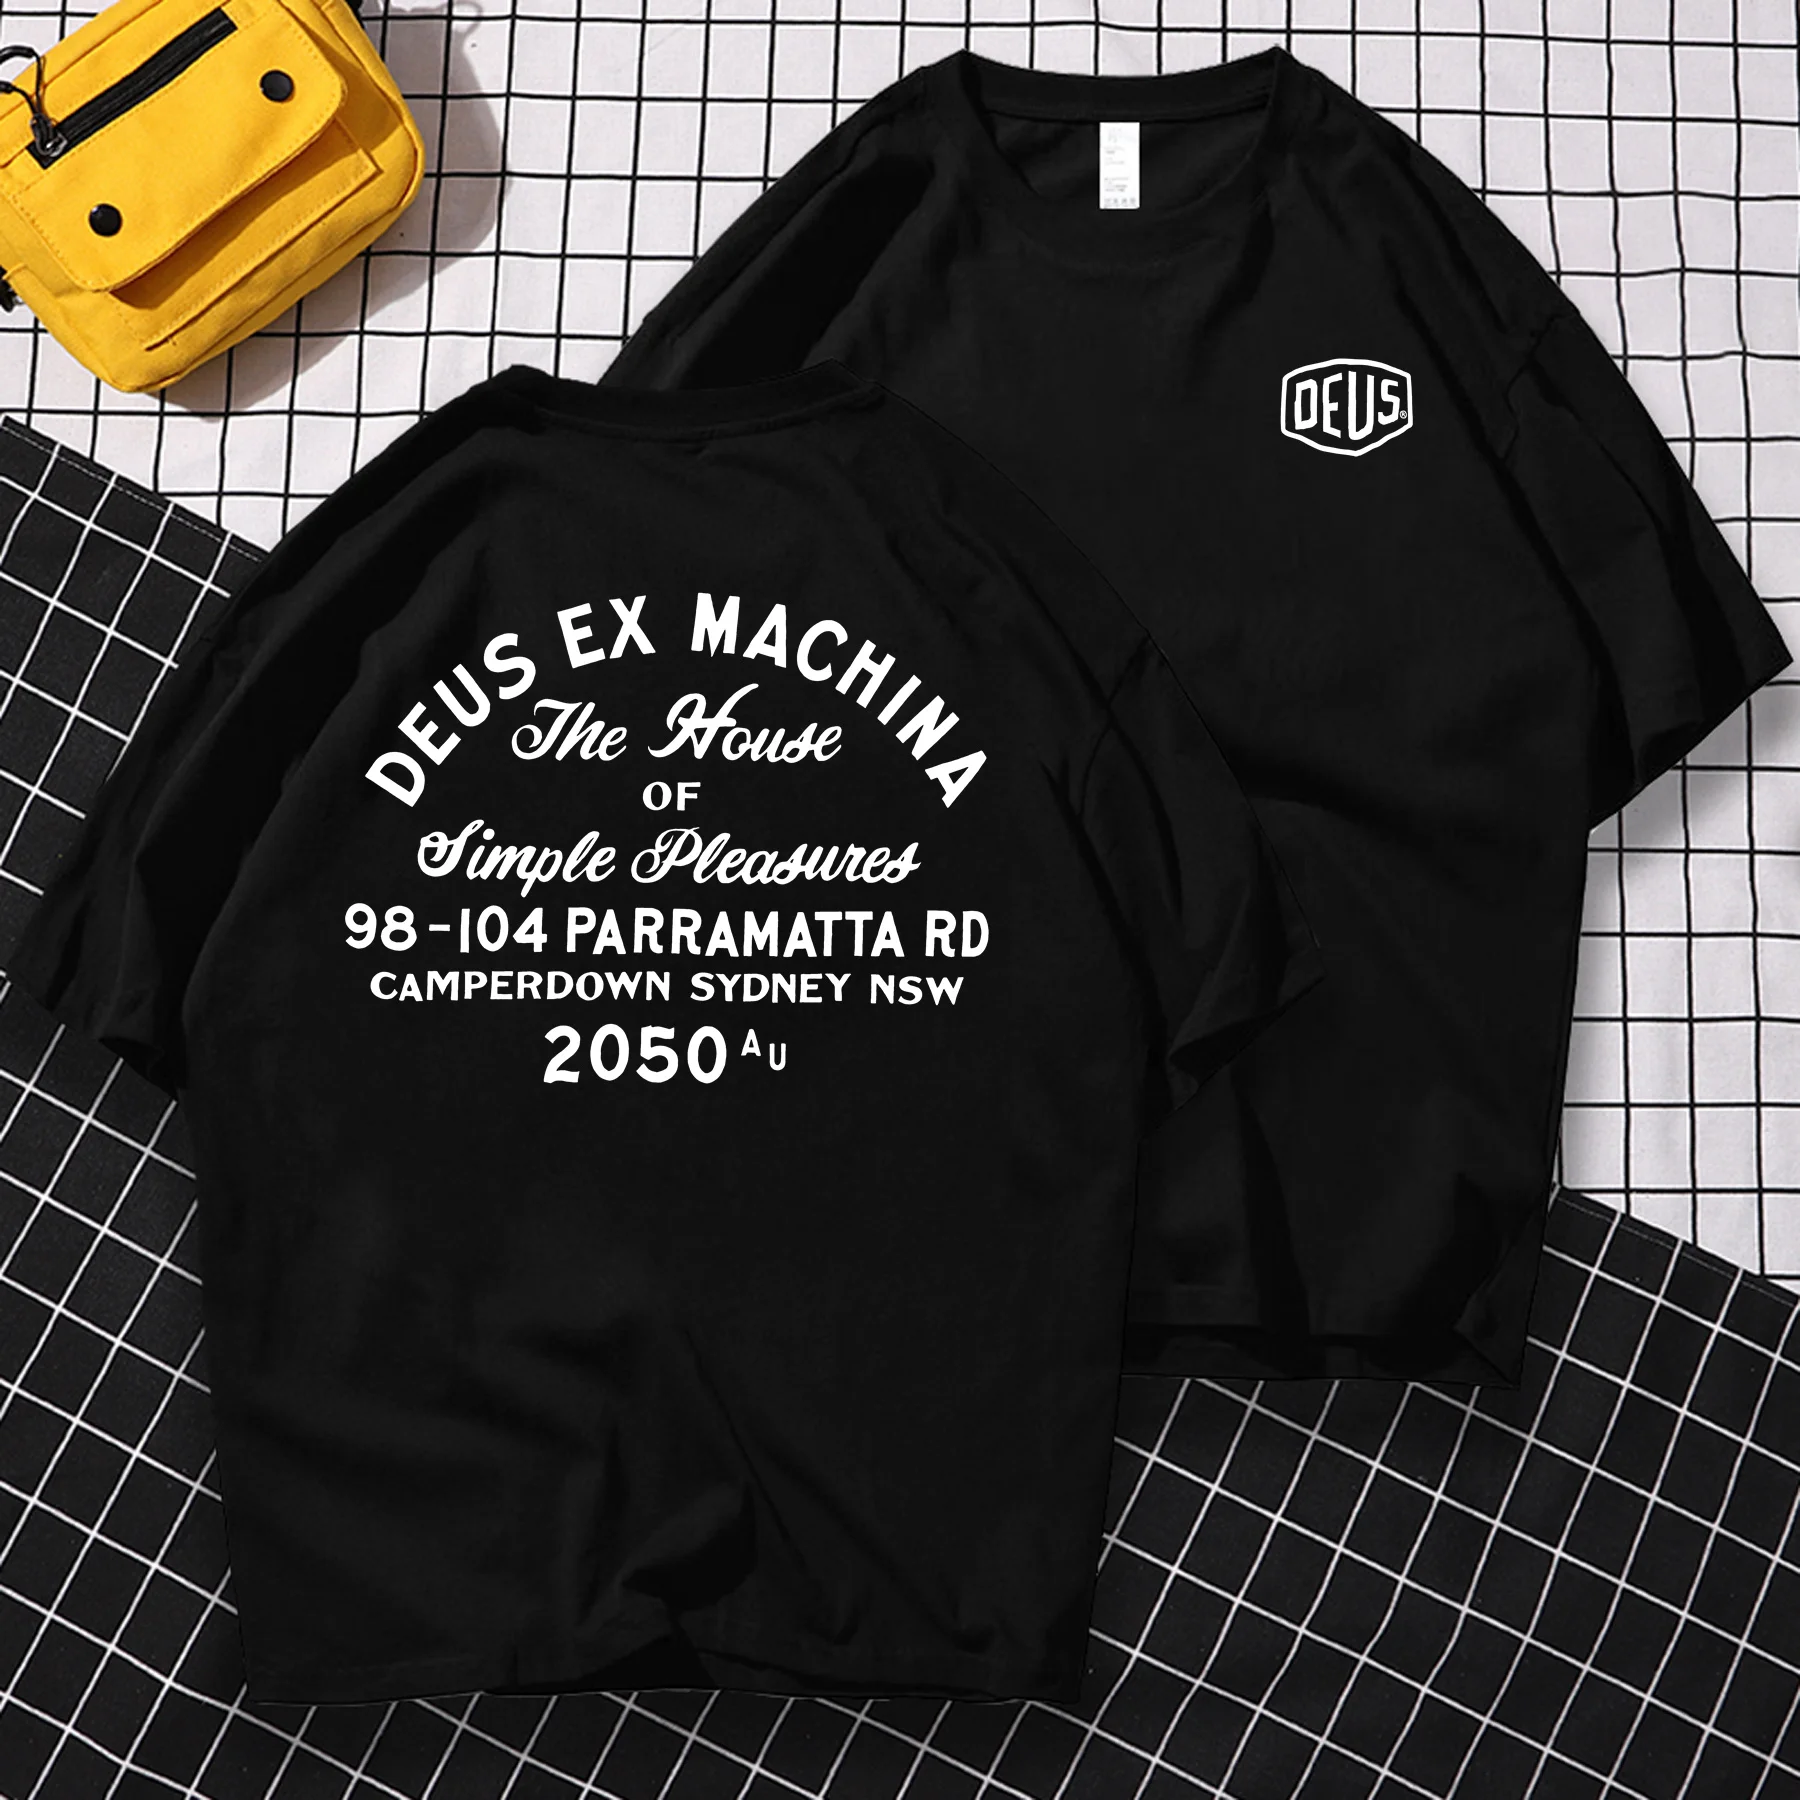 

Vintage Men Casual Summer Unique Hip Hop Oversized Deus-ex-machina T-shirt Male T-shirt Graphic Tees Short Sleeve Tops S-3XL